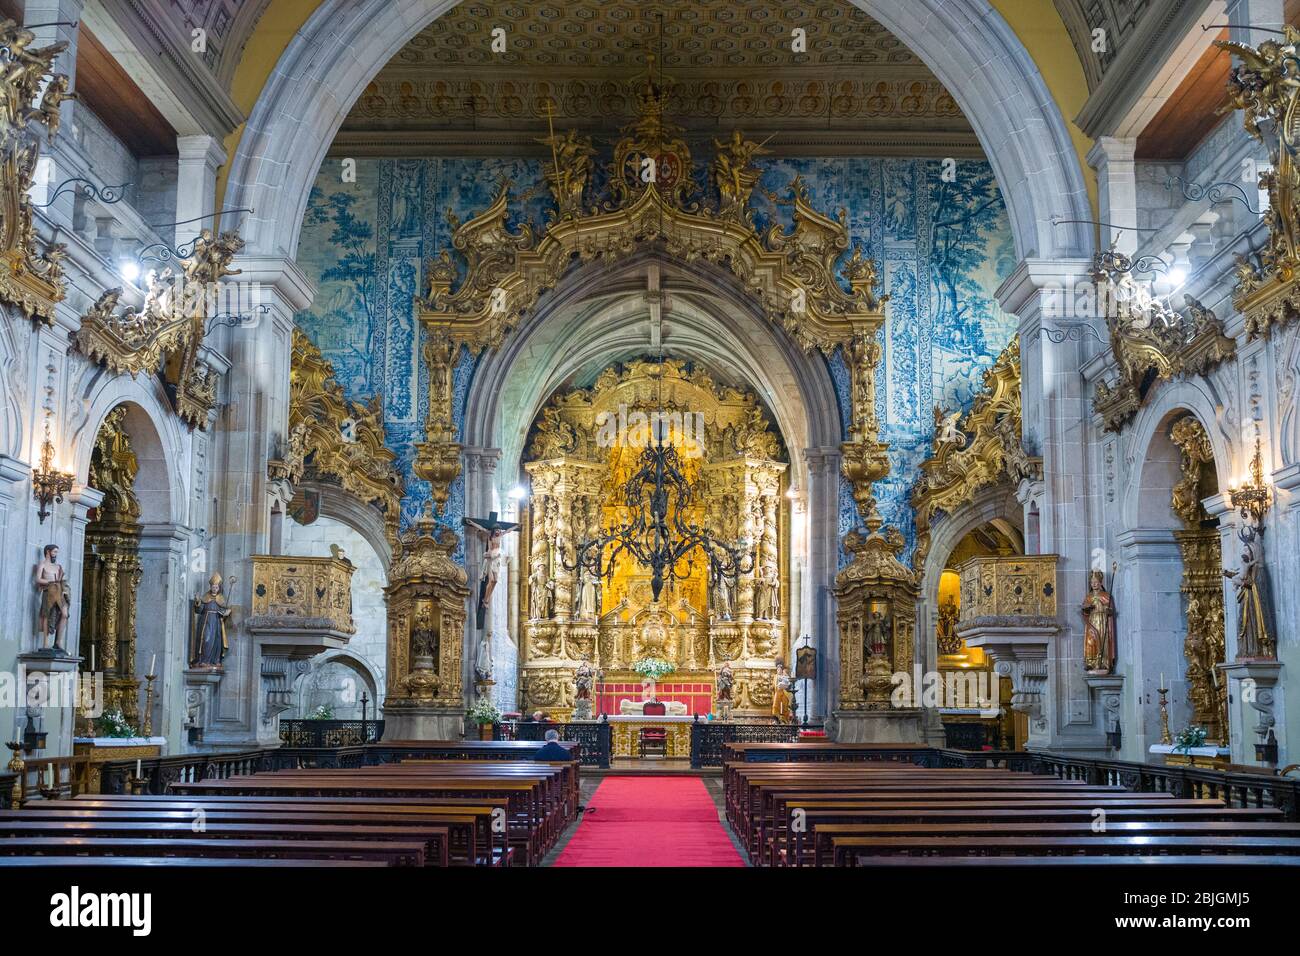 Chiesa di San Francesco con ornato doratura e piastrelle azulejos tradizionale sopra l'altare nella città di Guimares in Portogallo Foto Stock